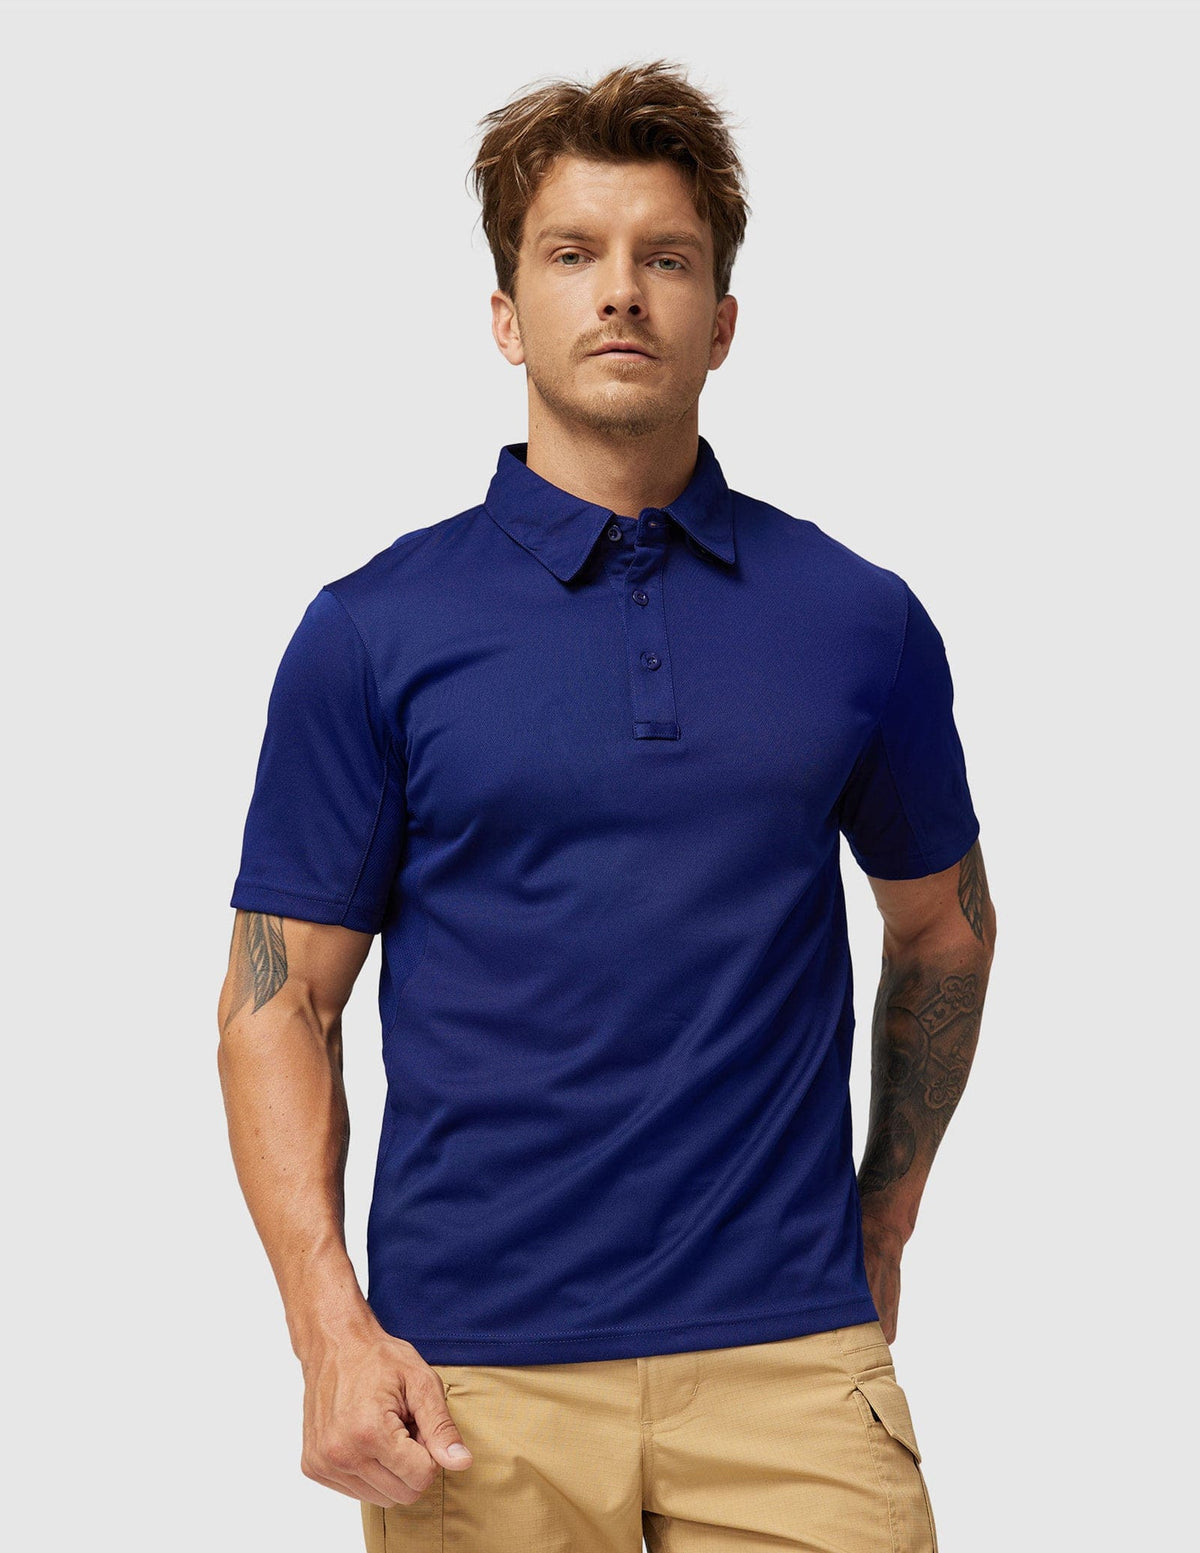 Men's Tactical Polo Shirts Outdoor Performance Collared Shirt Men Polo Navy / S MIER